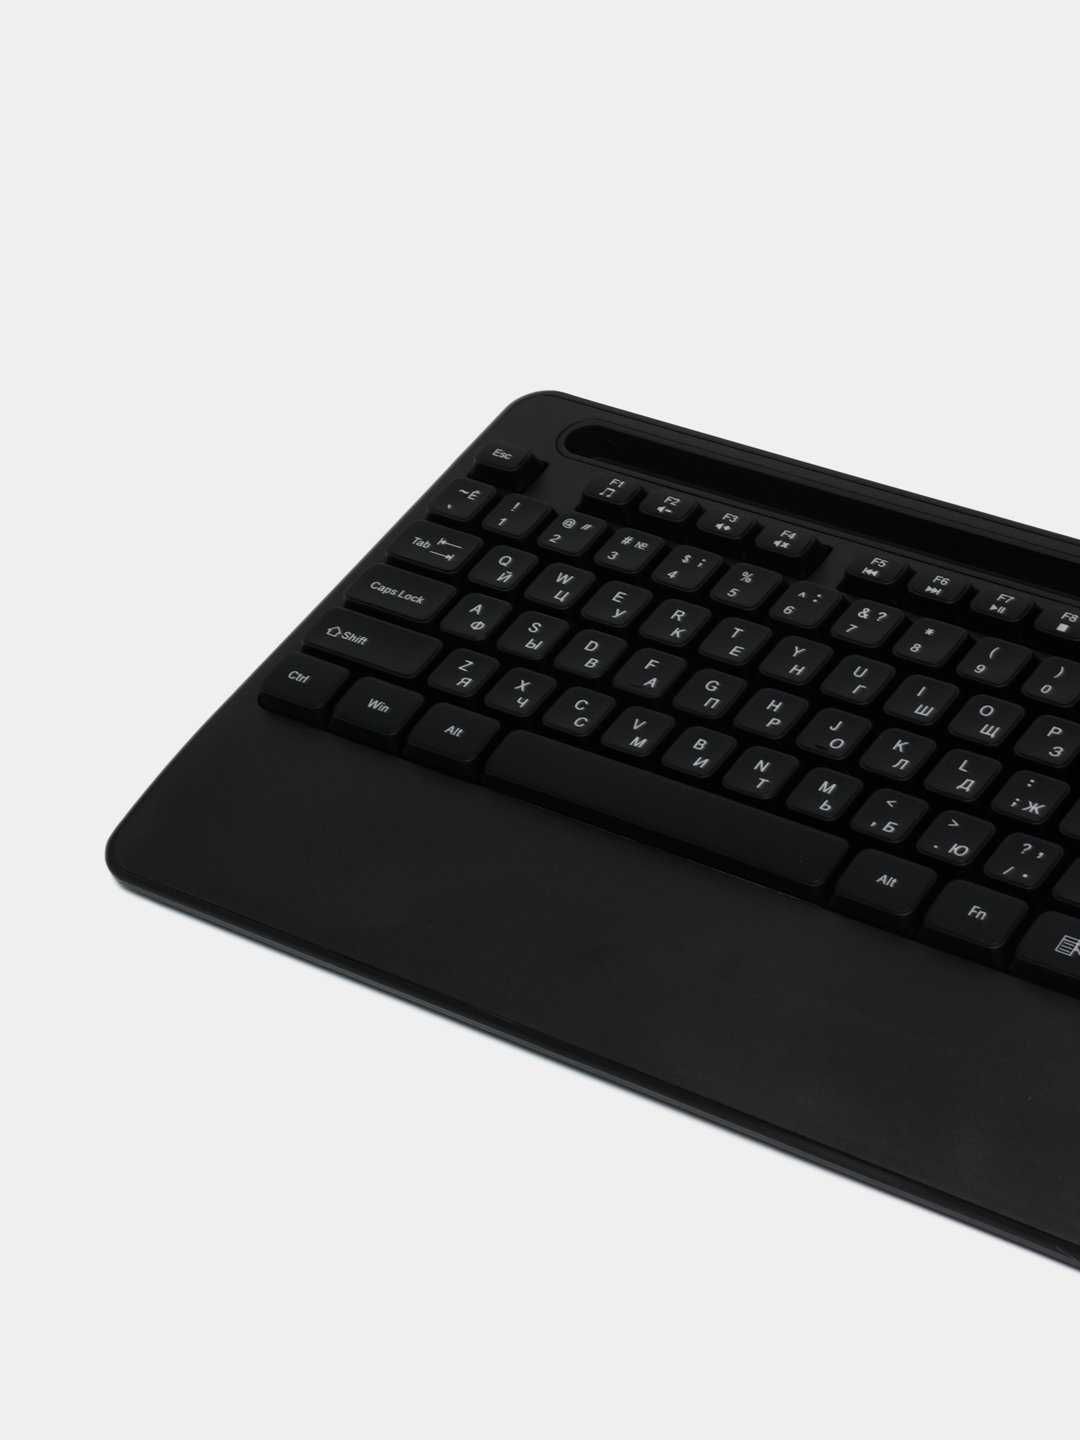 Комплект клавиатура+мышь AVTECH PRO CW603 (Black) - абсолютно новый